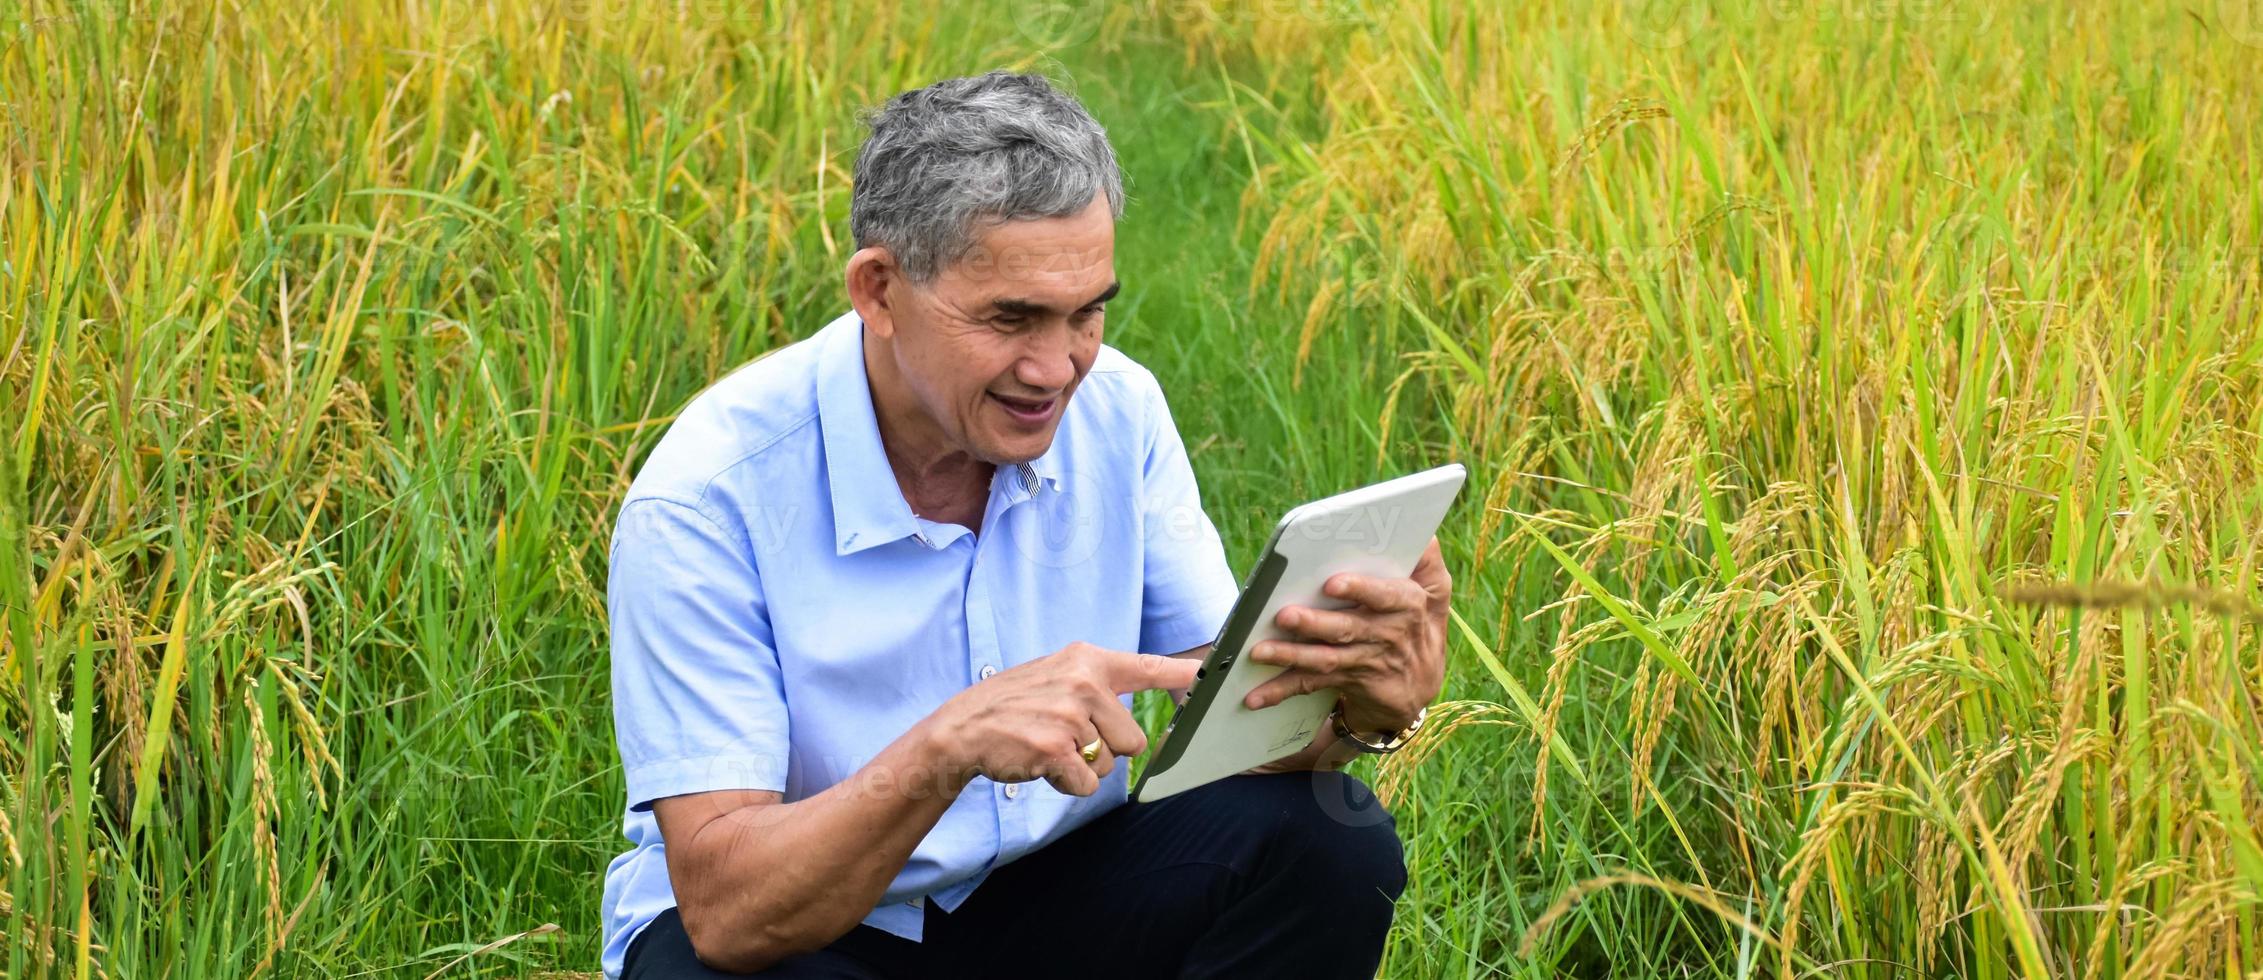 l'uomo anziano asiatico indossa una camicia bianca e jeans seduto in mezzo alla risaia e prende smartphone o taplet per scattare foto e utilizzare il social network per condividere la sua vita quotidiana.